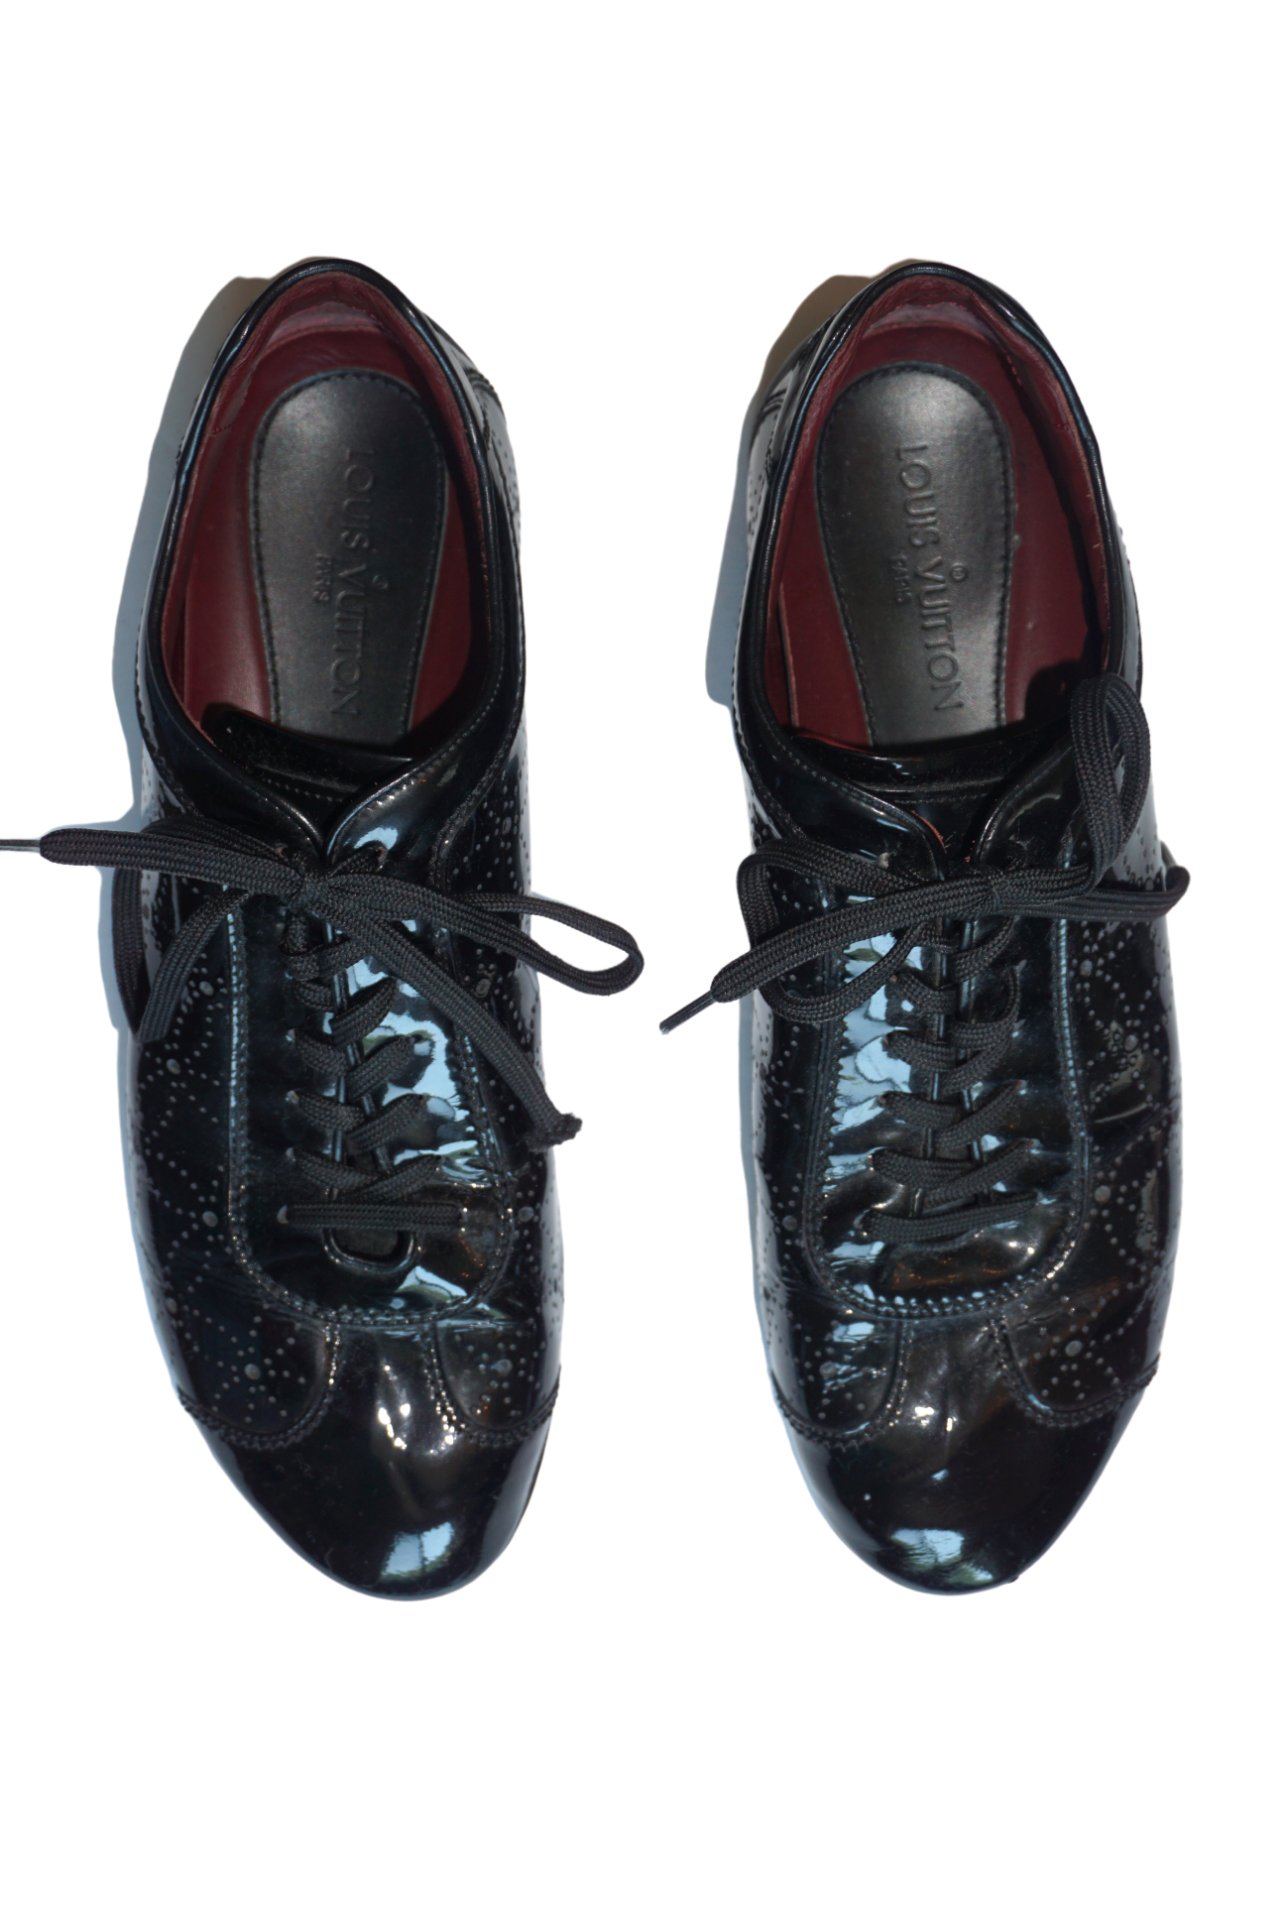 Louis Vuitton Black Brogue Leather Explorer Sneakers Size 42